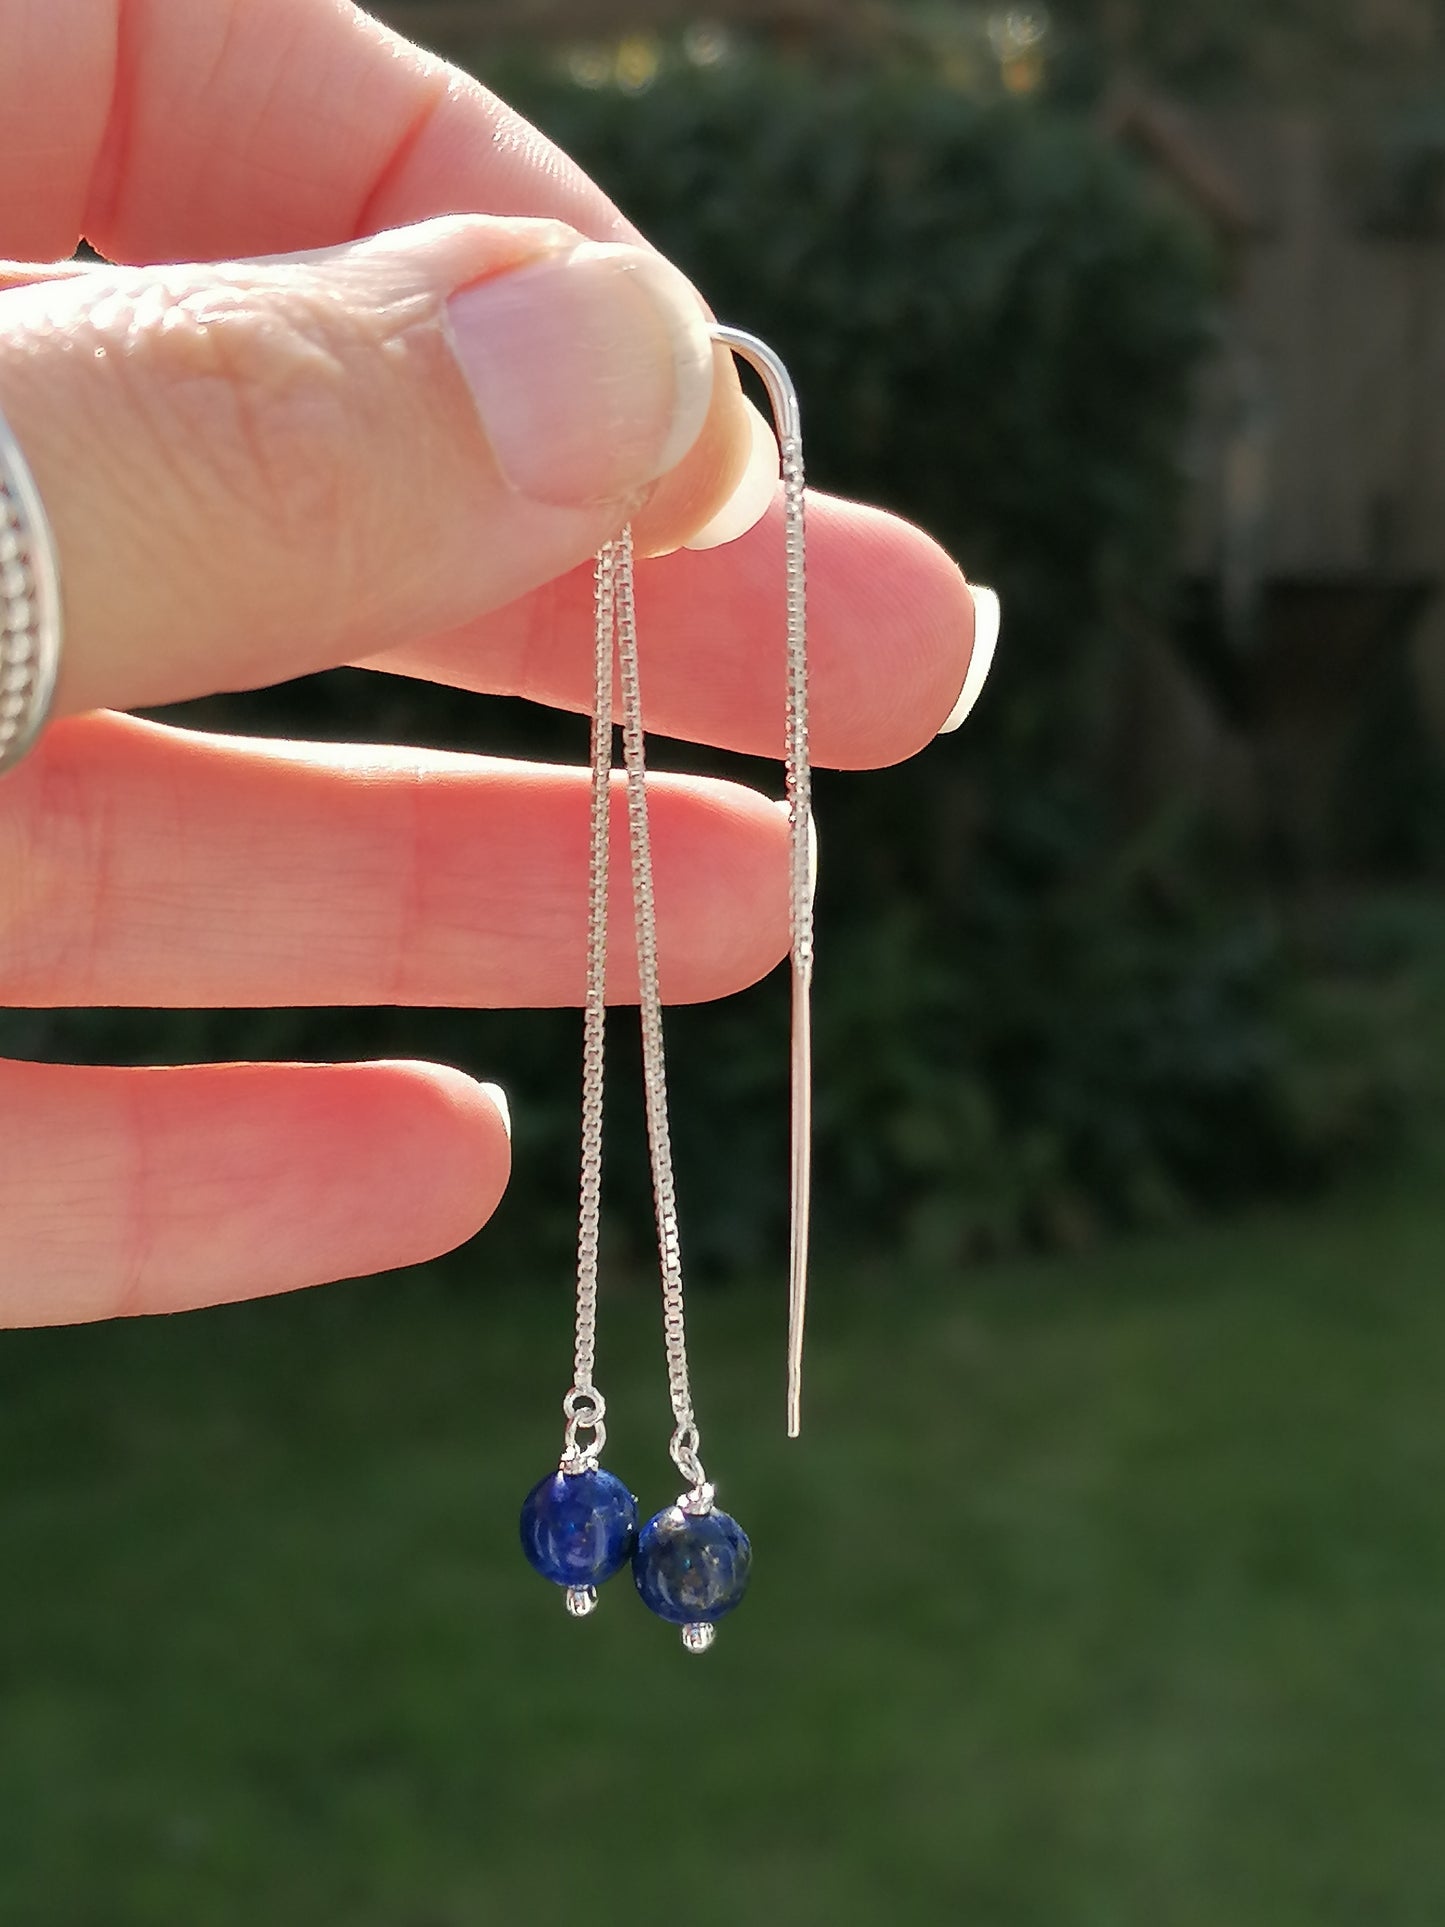 Lapis lazuli threader earrings in sterling silver. September birthstone earrings.